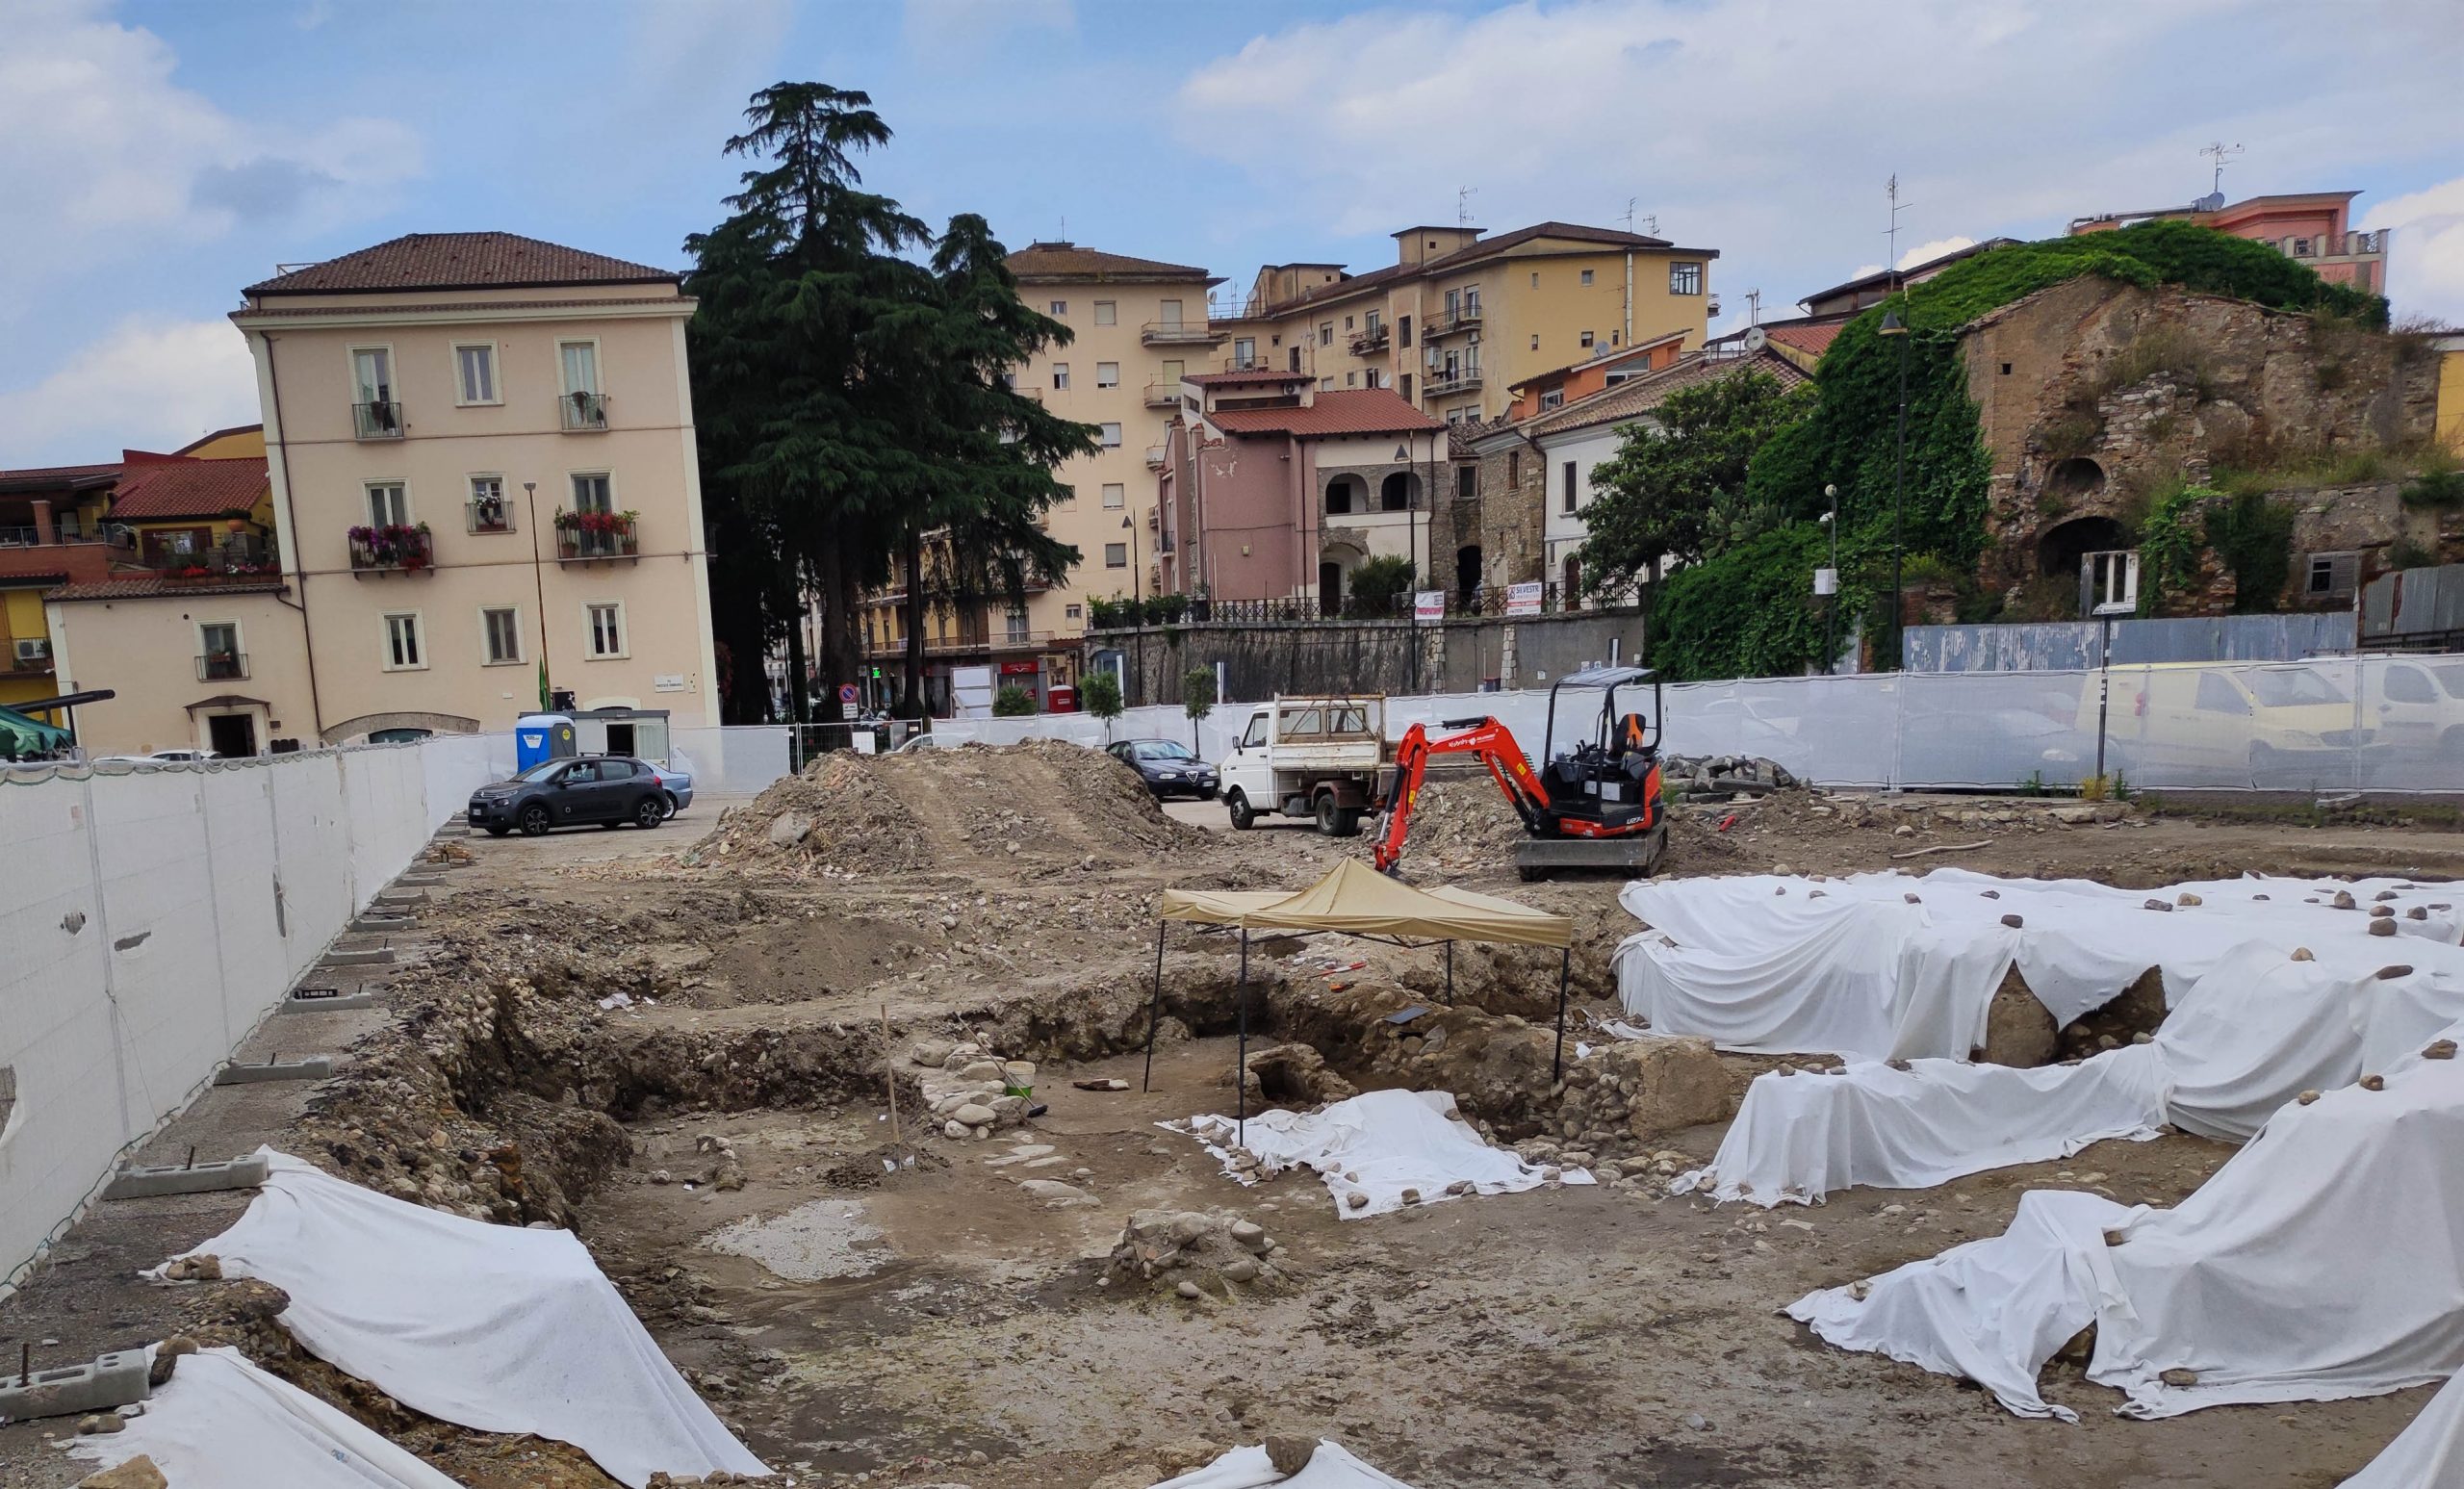 I due scavi in piazza Santa Maria, Gabriele Corona: “le contraddizioni del funzionario archeologo della Soprintendenza